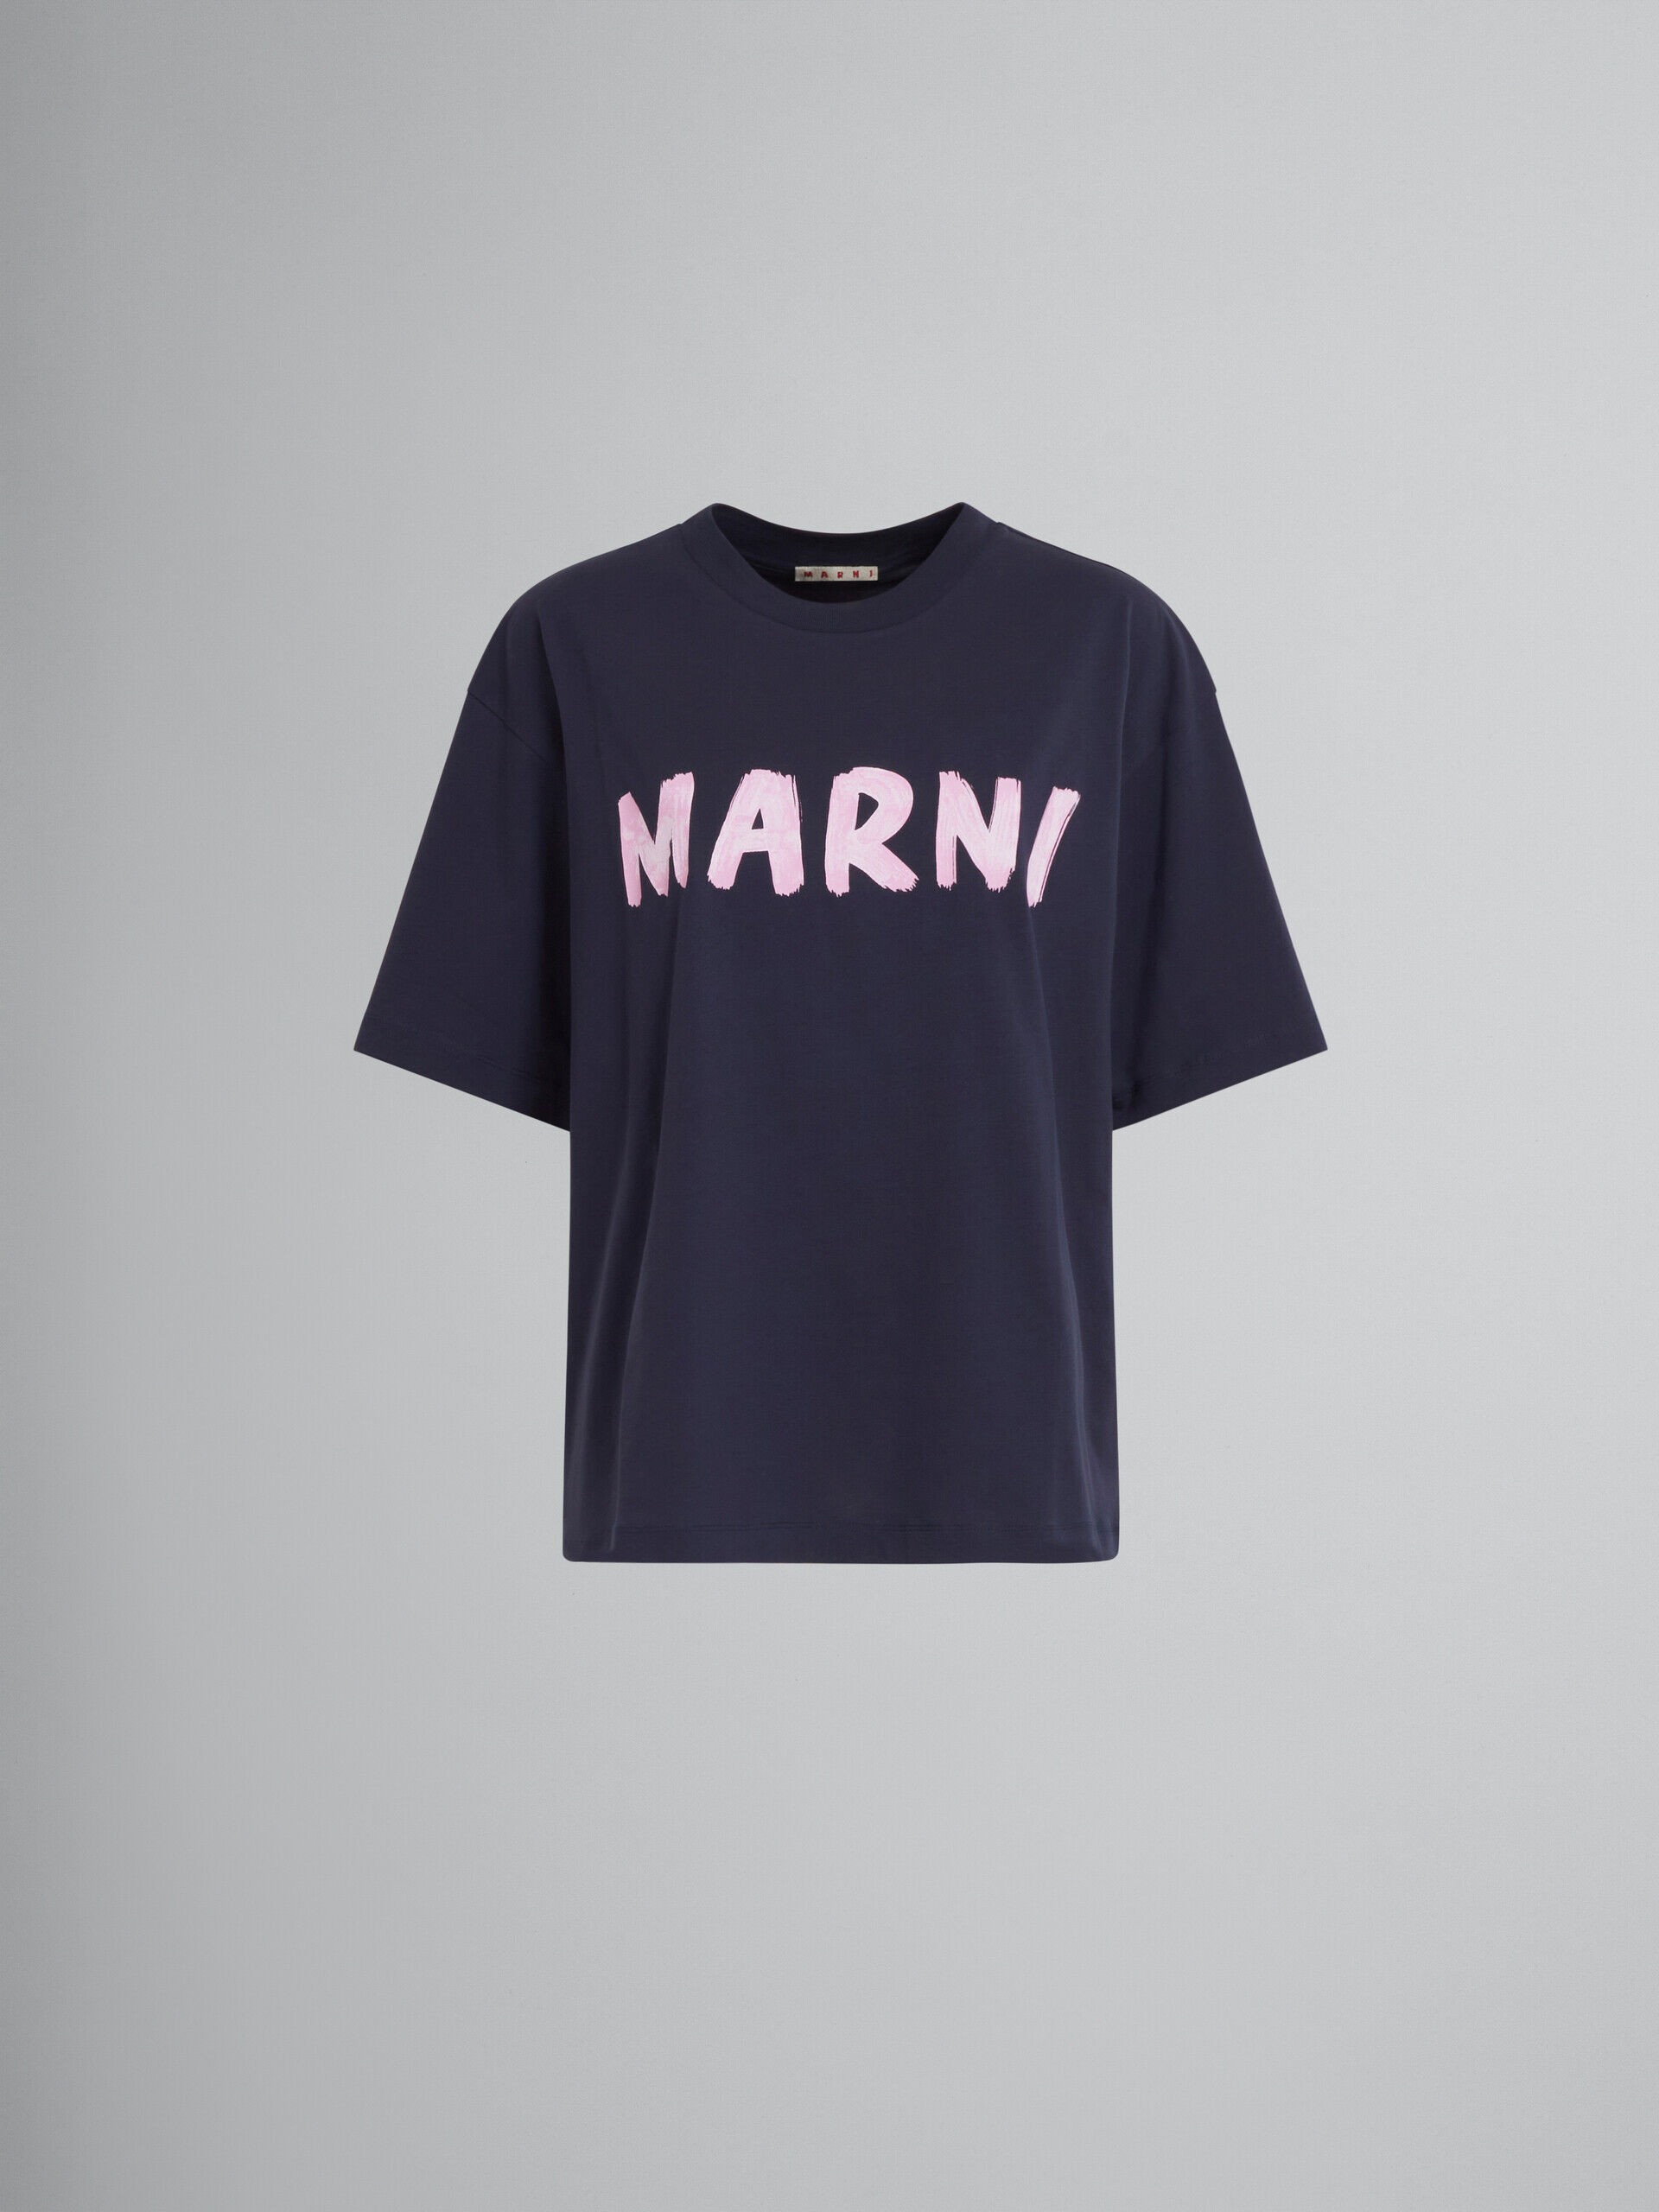 marni の人気ロゴTシャツです！